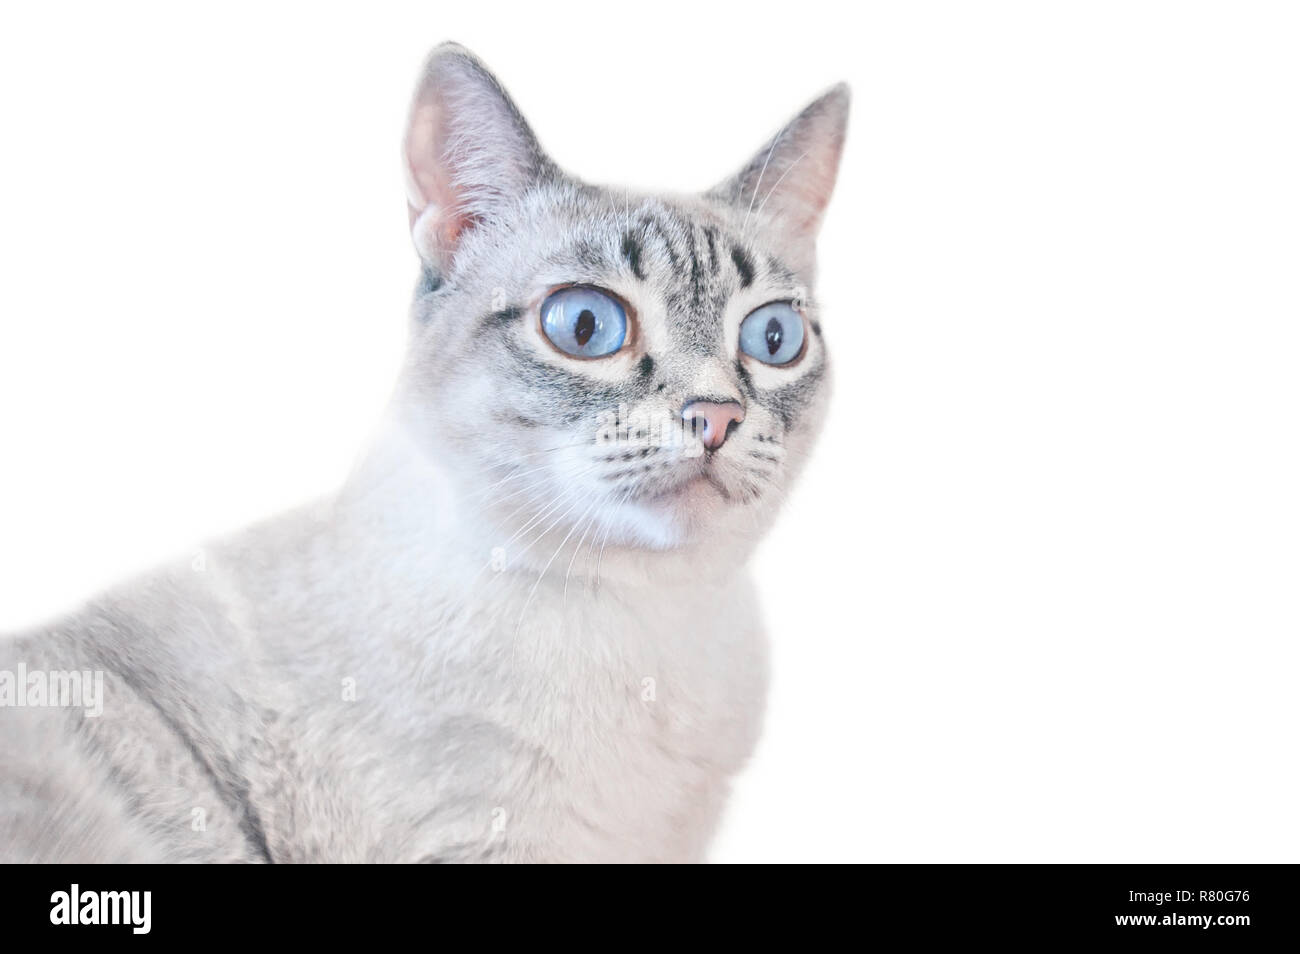 Surpris cat isolé sur fond blanc. Chat blanc à rayures gris avec des yeux bleus. Banque D'Images